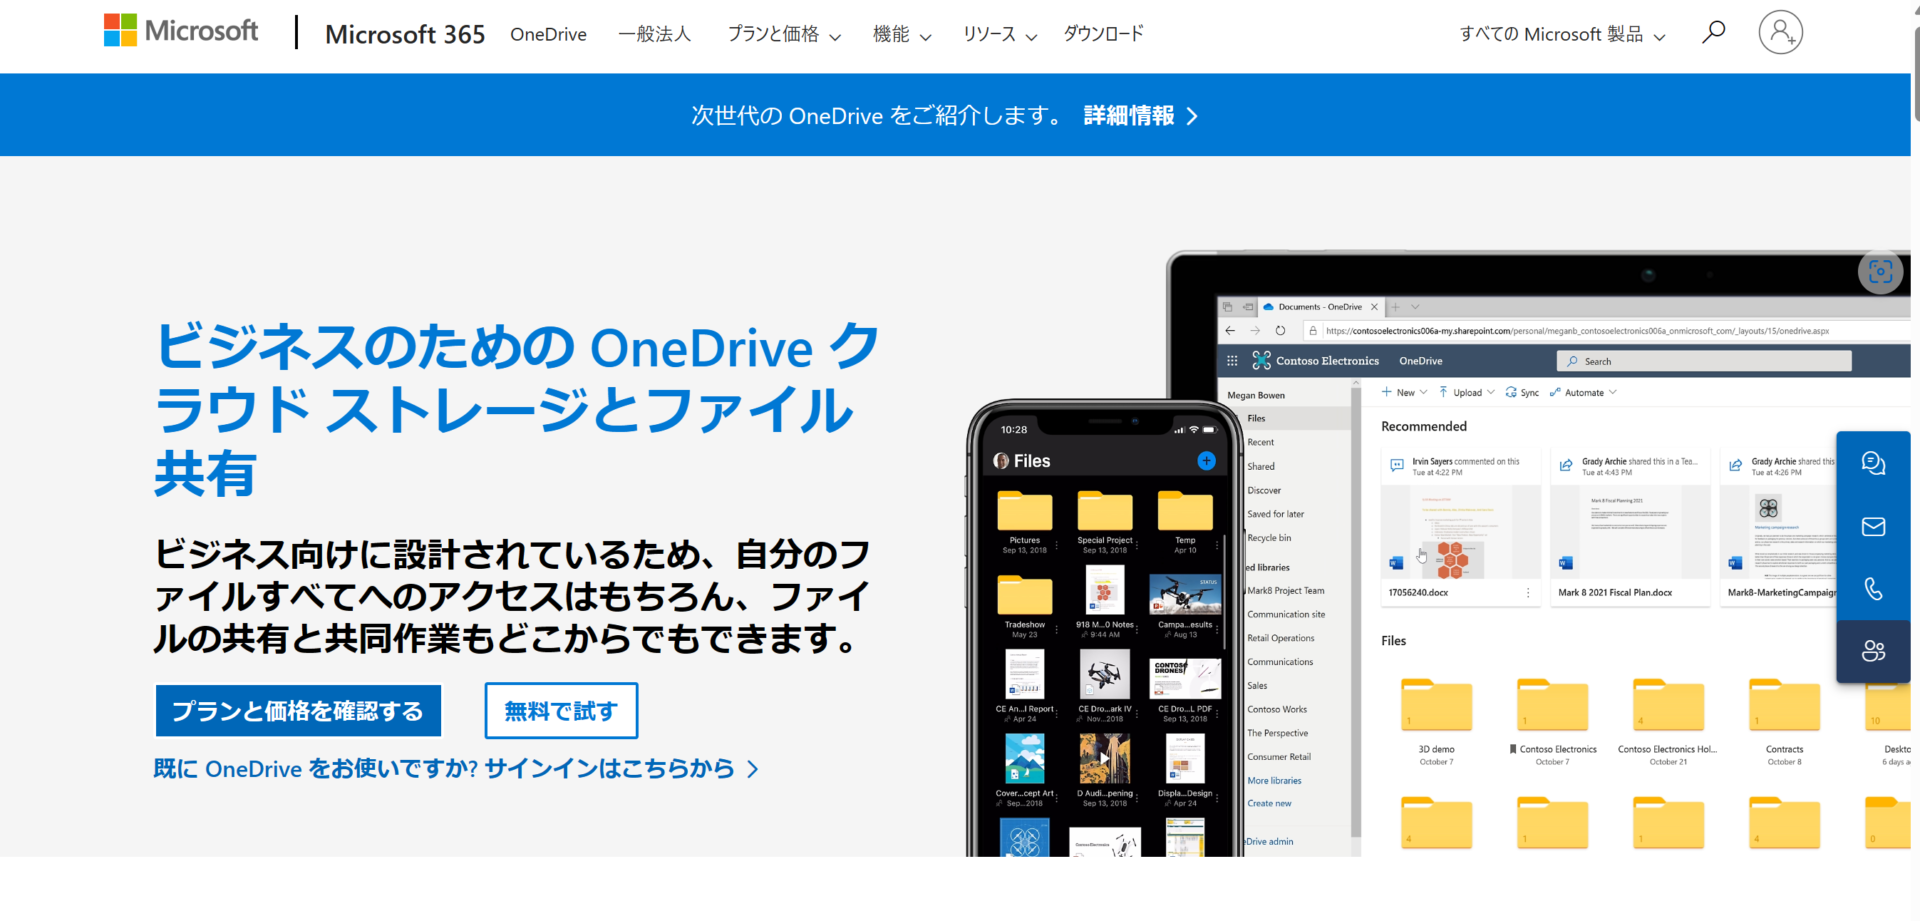 OneDriveのトップページ